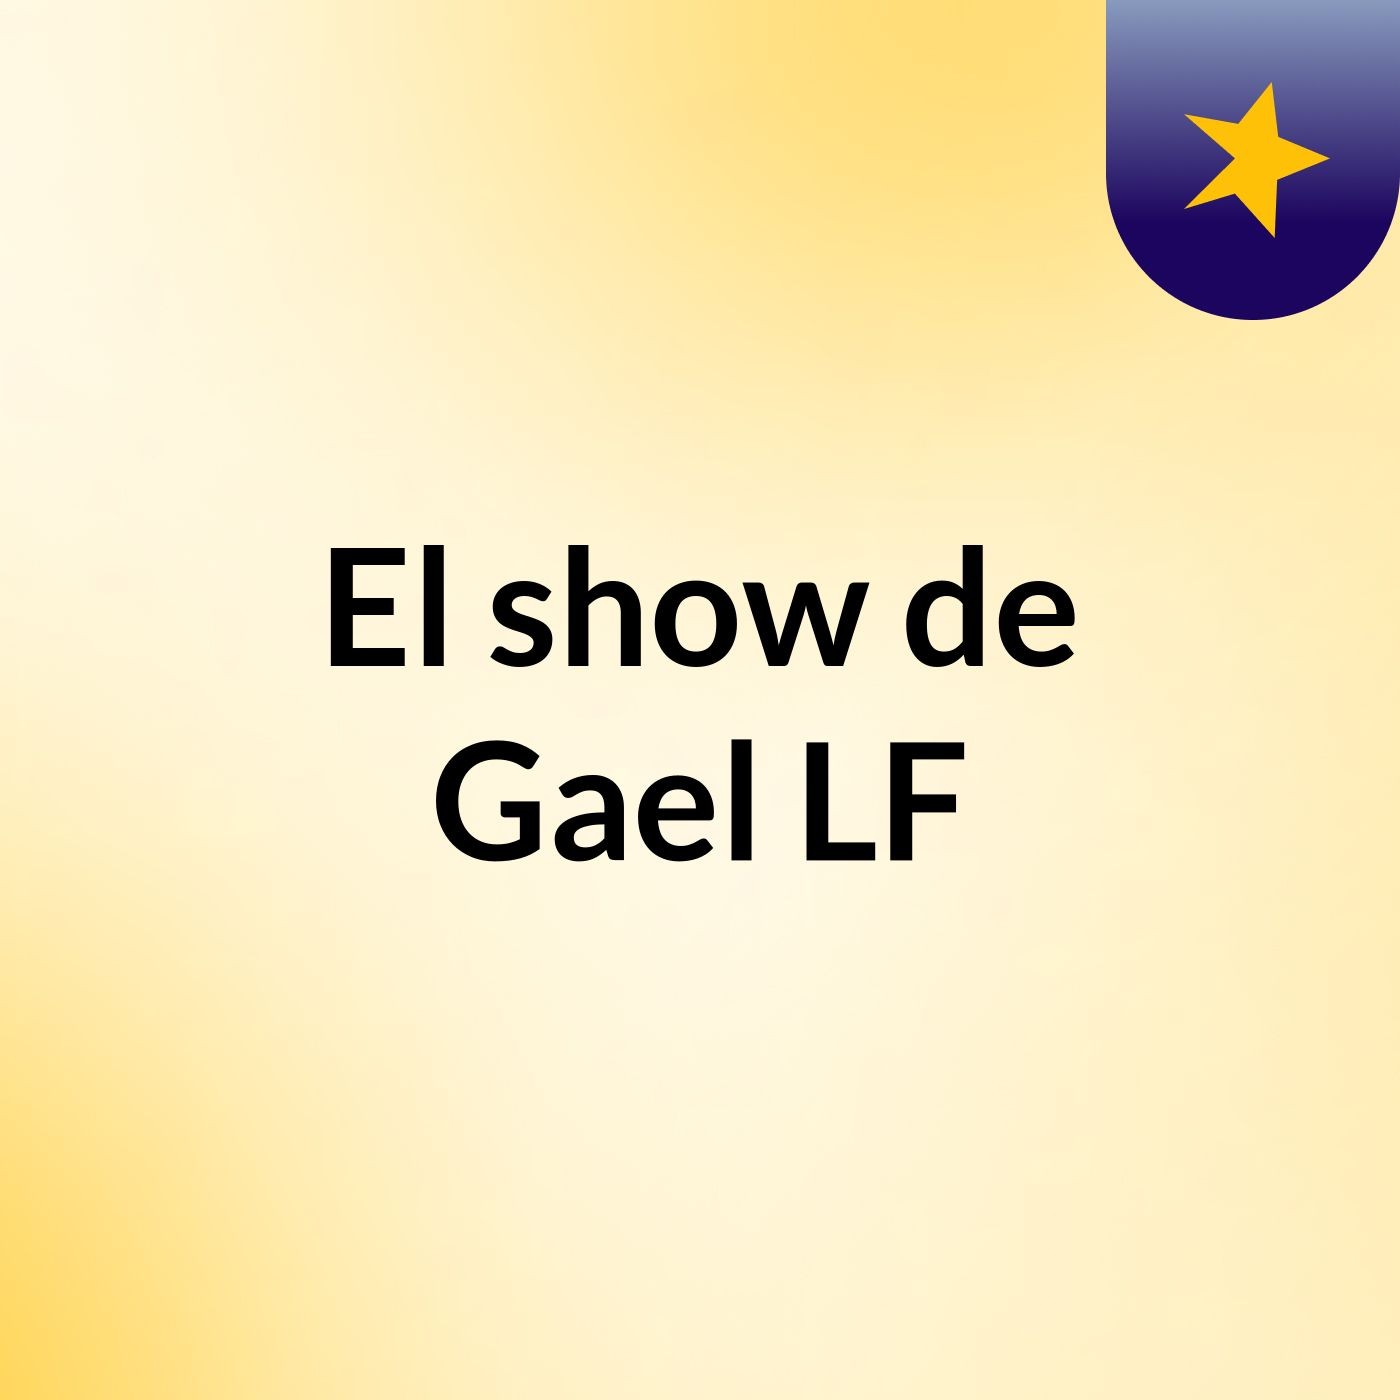 Episodio 3 - El show de Gael LF